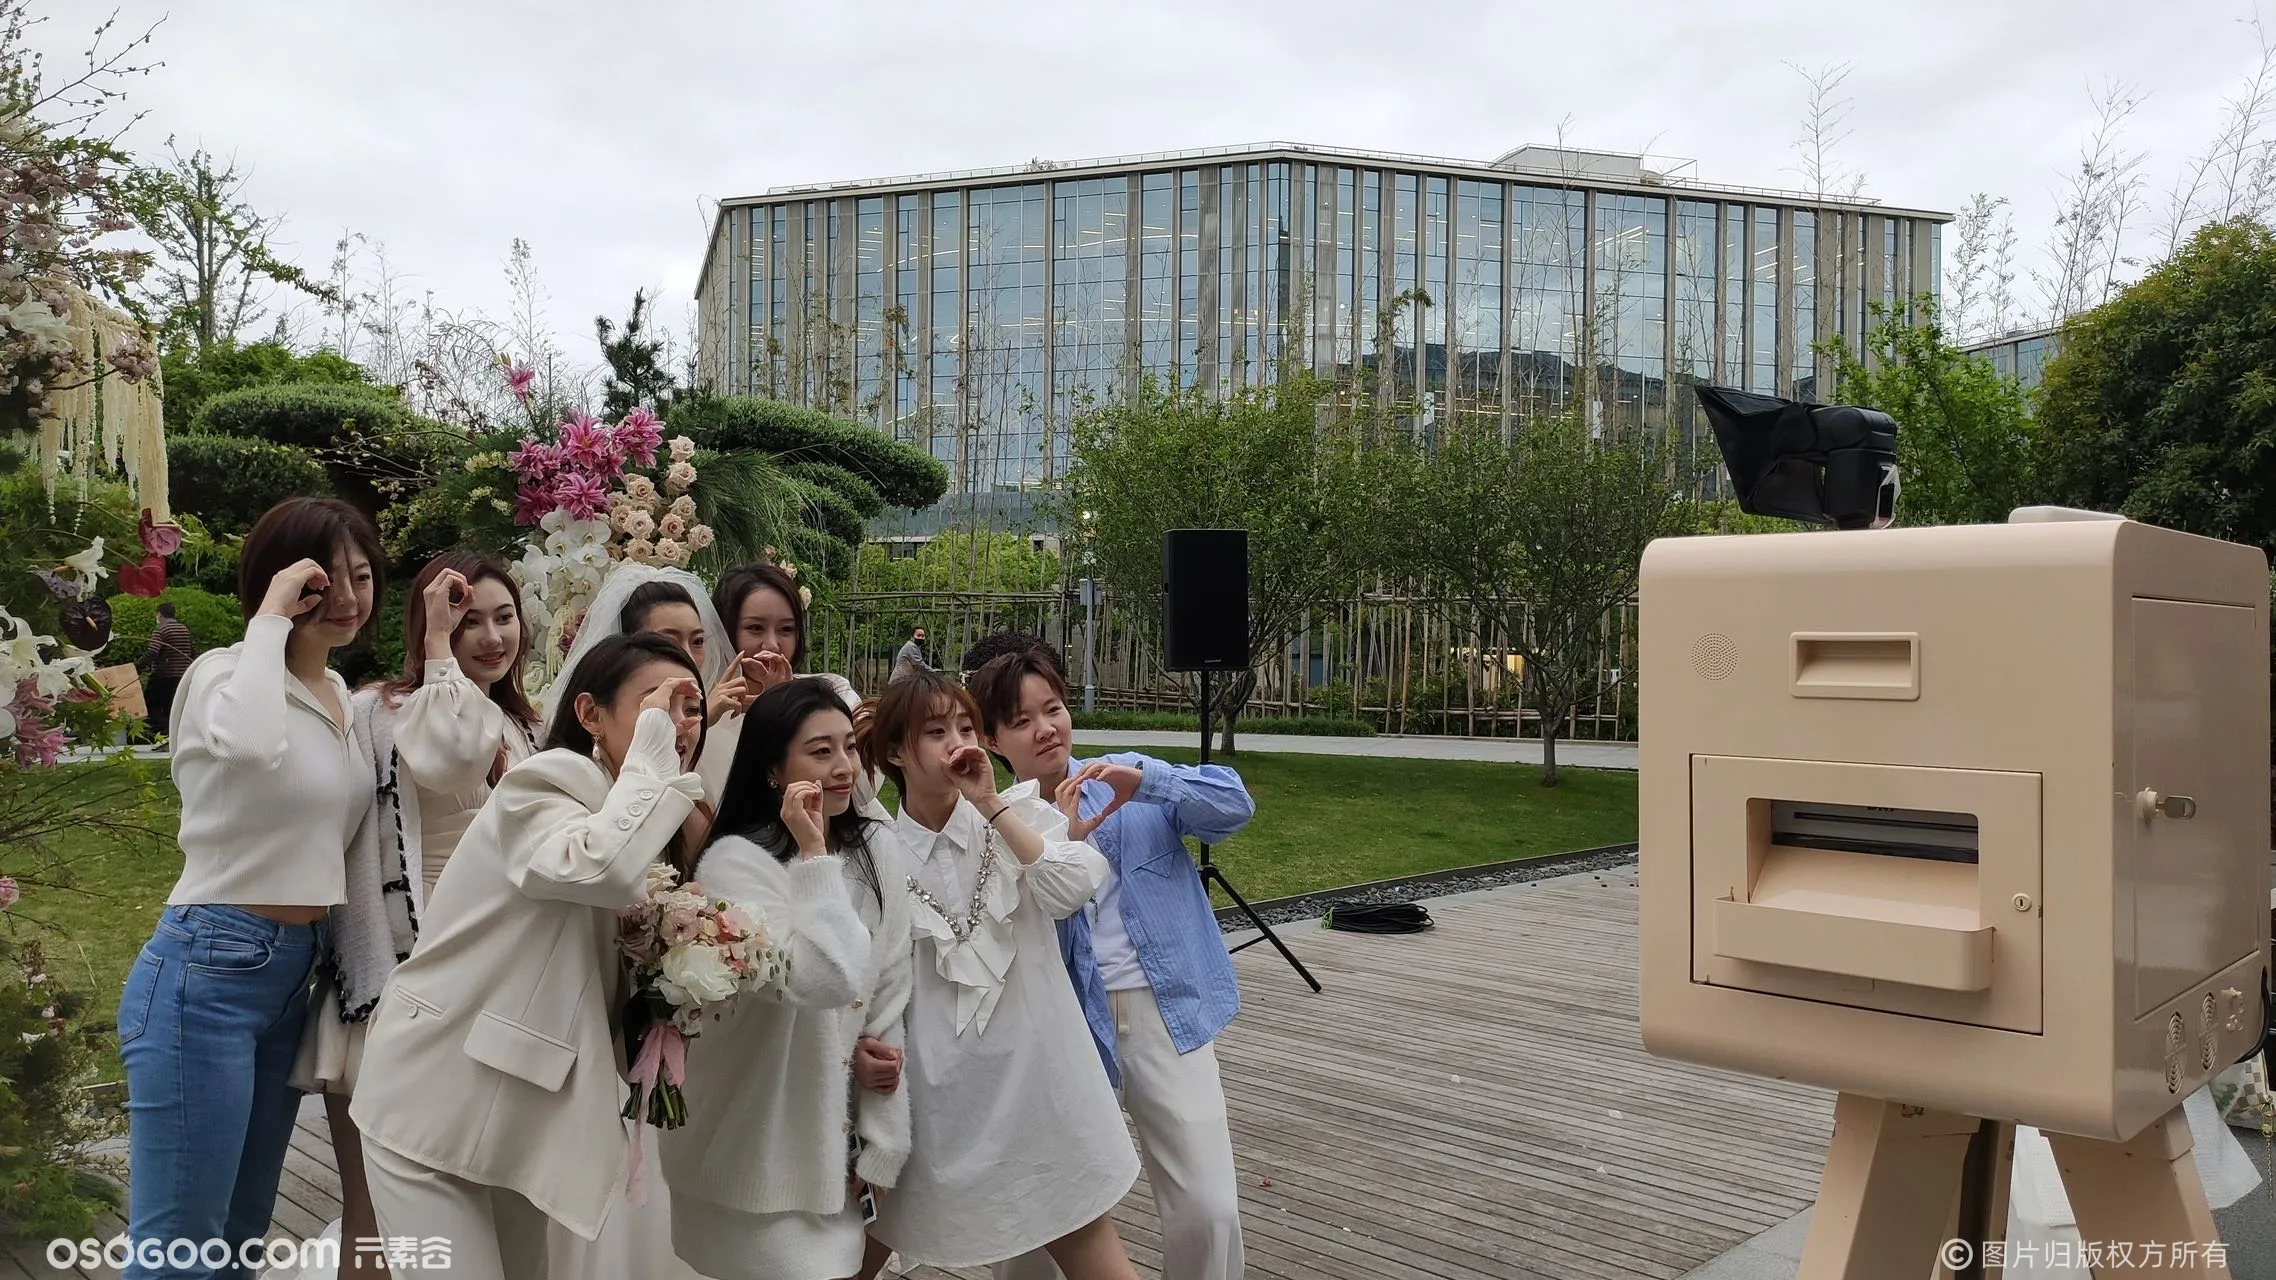 上海站婚礼派对拍照/萌拍拍照互动装置